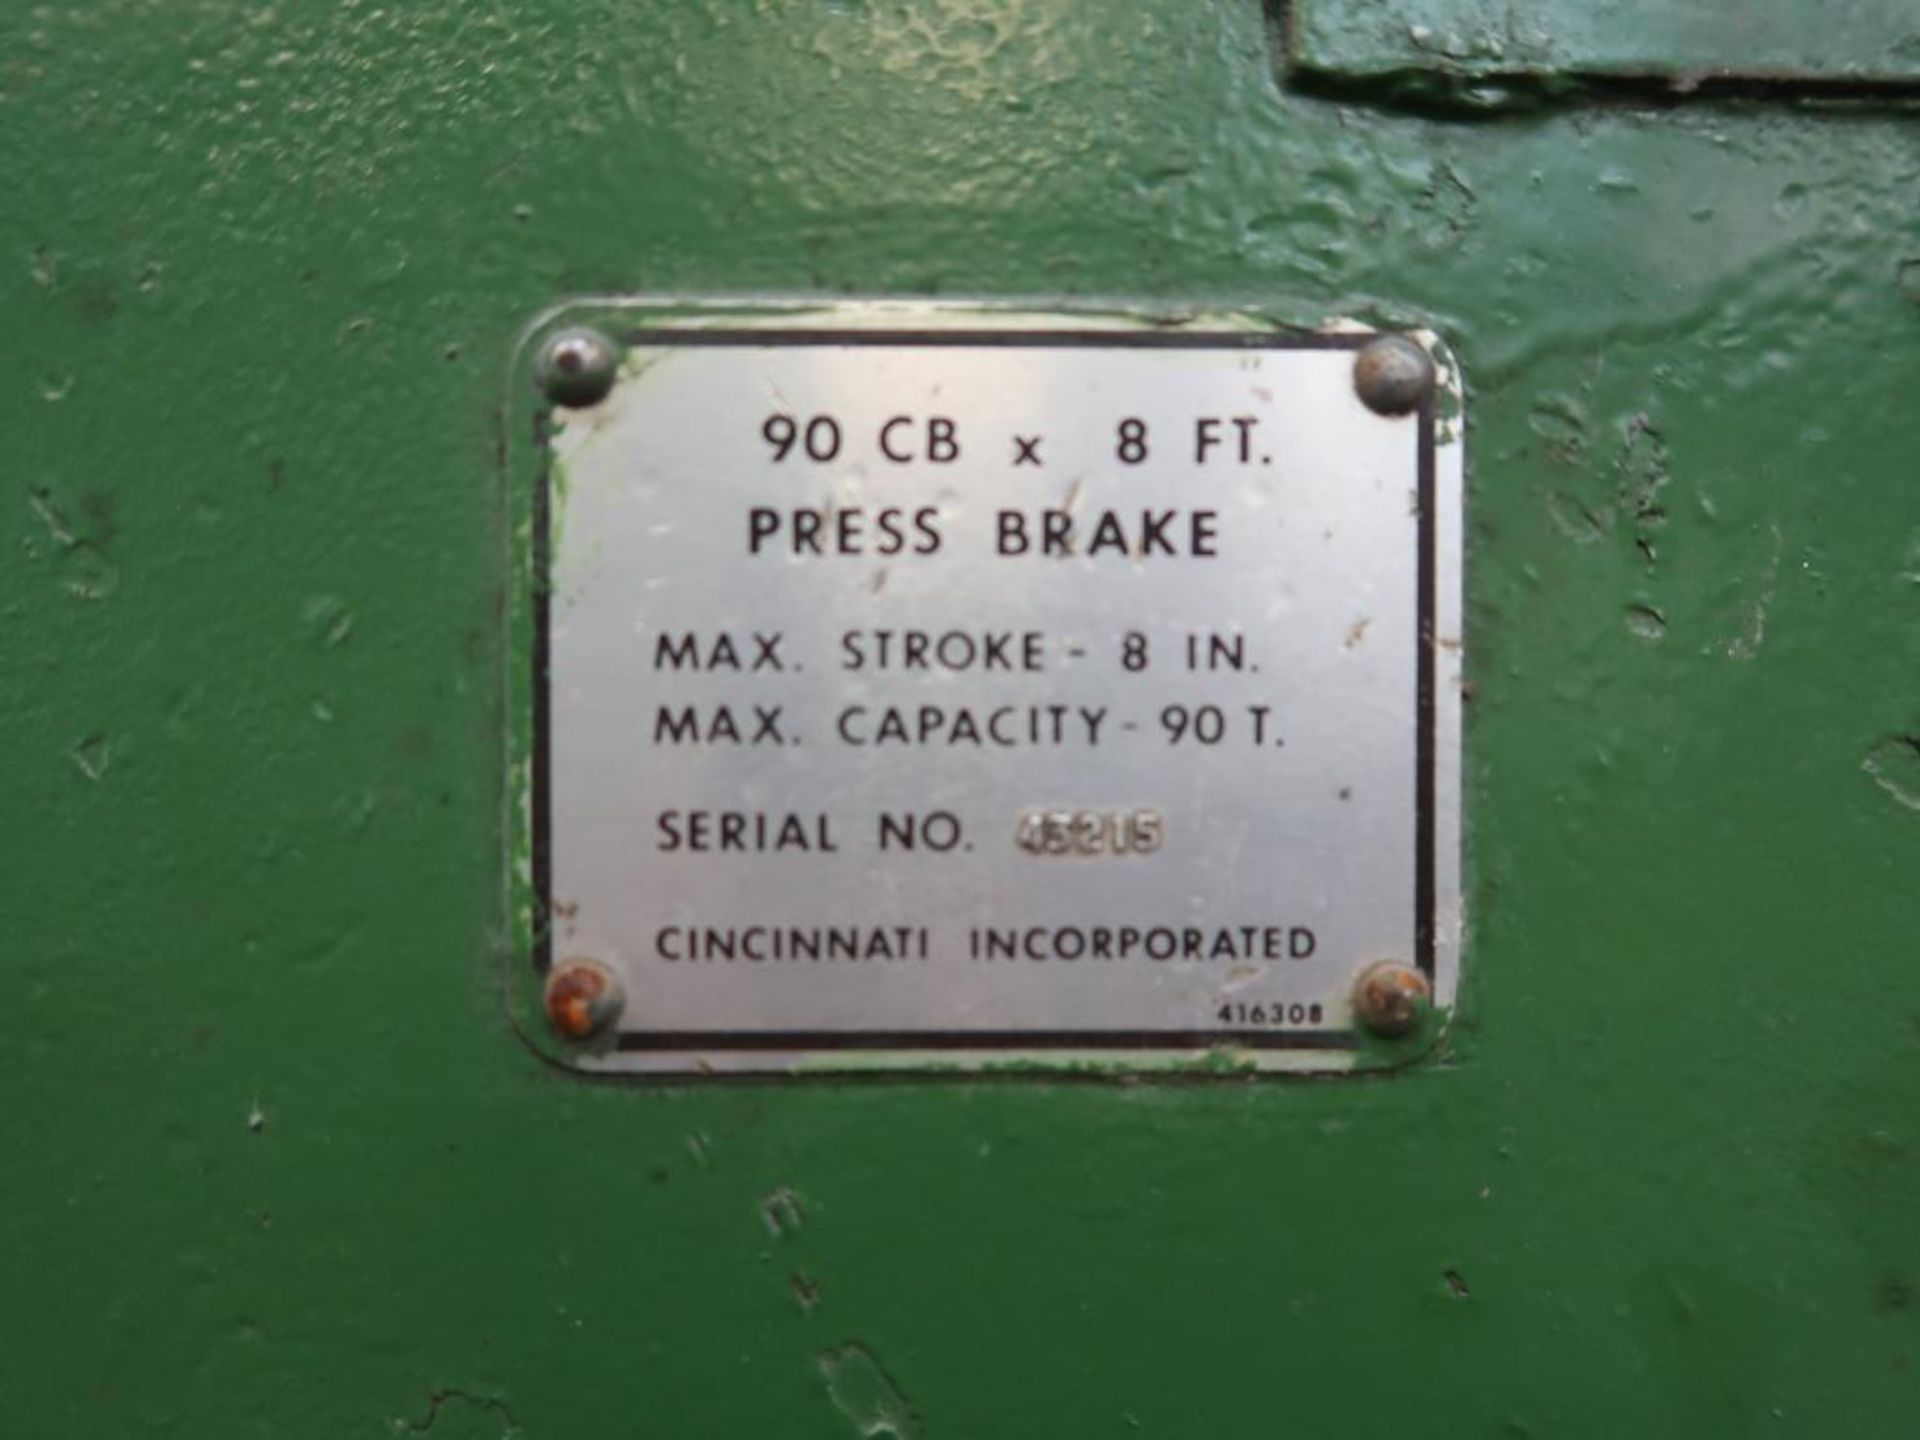 Cincinnati 90 Ton x 10 ft. Press Brake Model 90CB, S/N 43215, 8 in. Max. Stroke, Auto-Programmed - Image 6 of 6